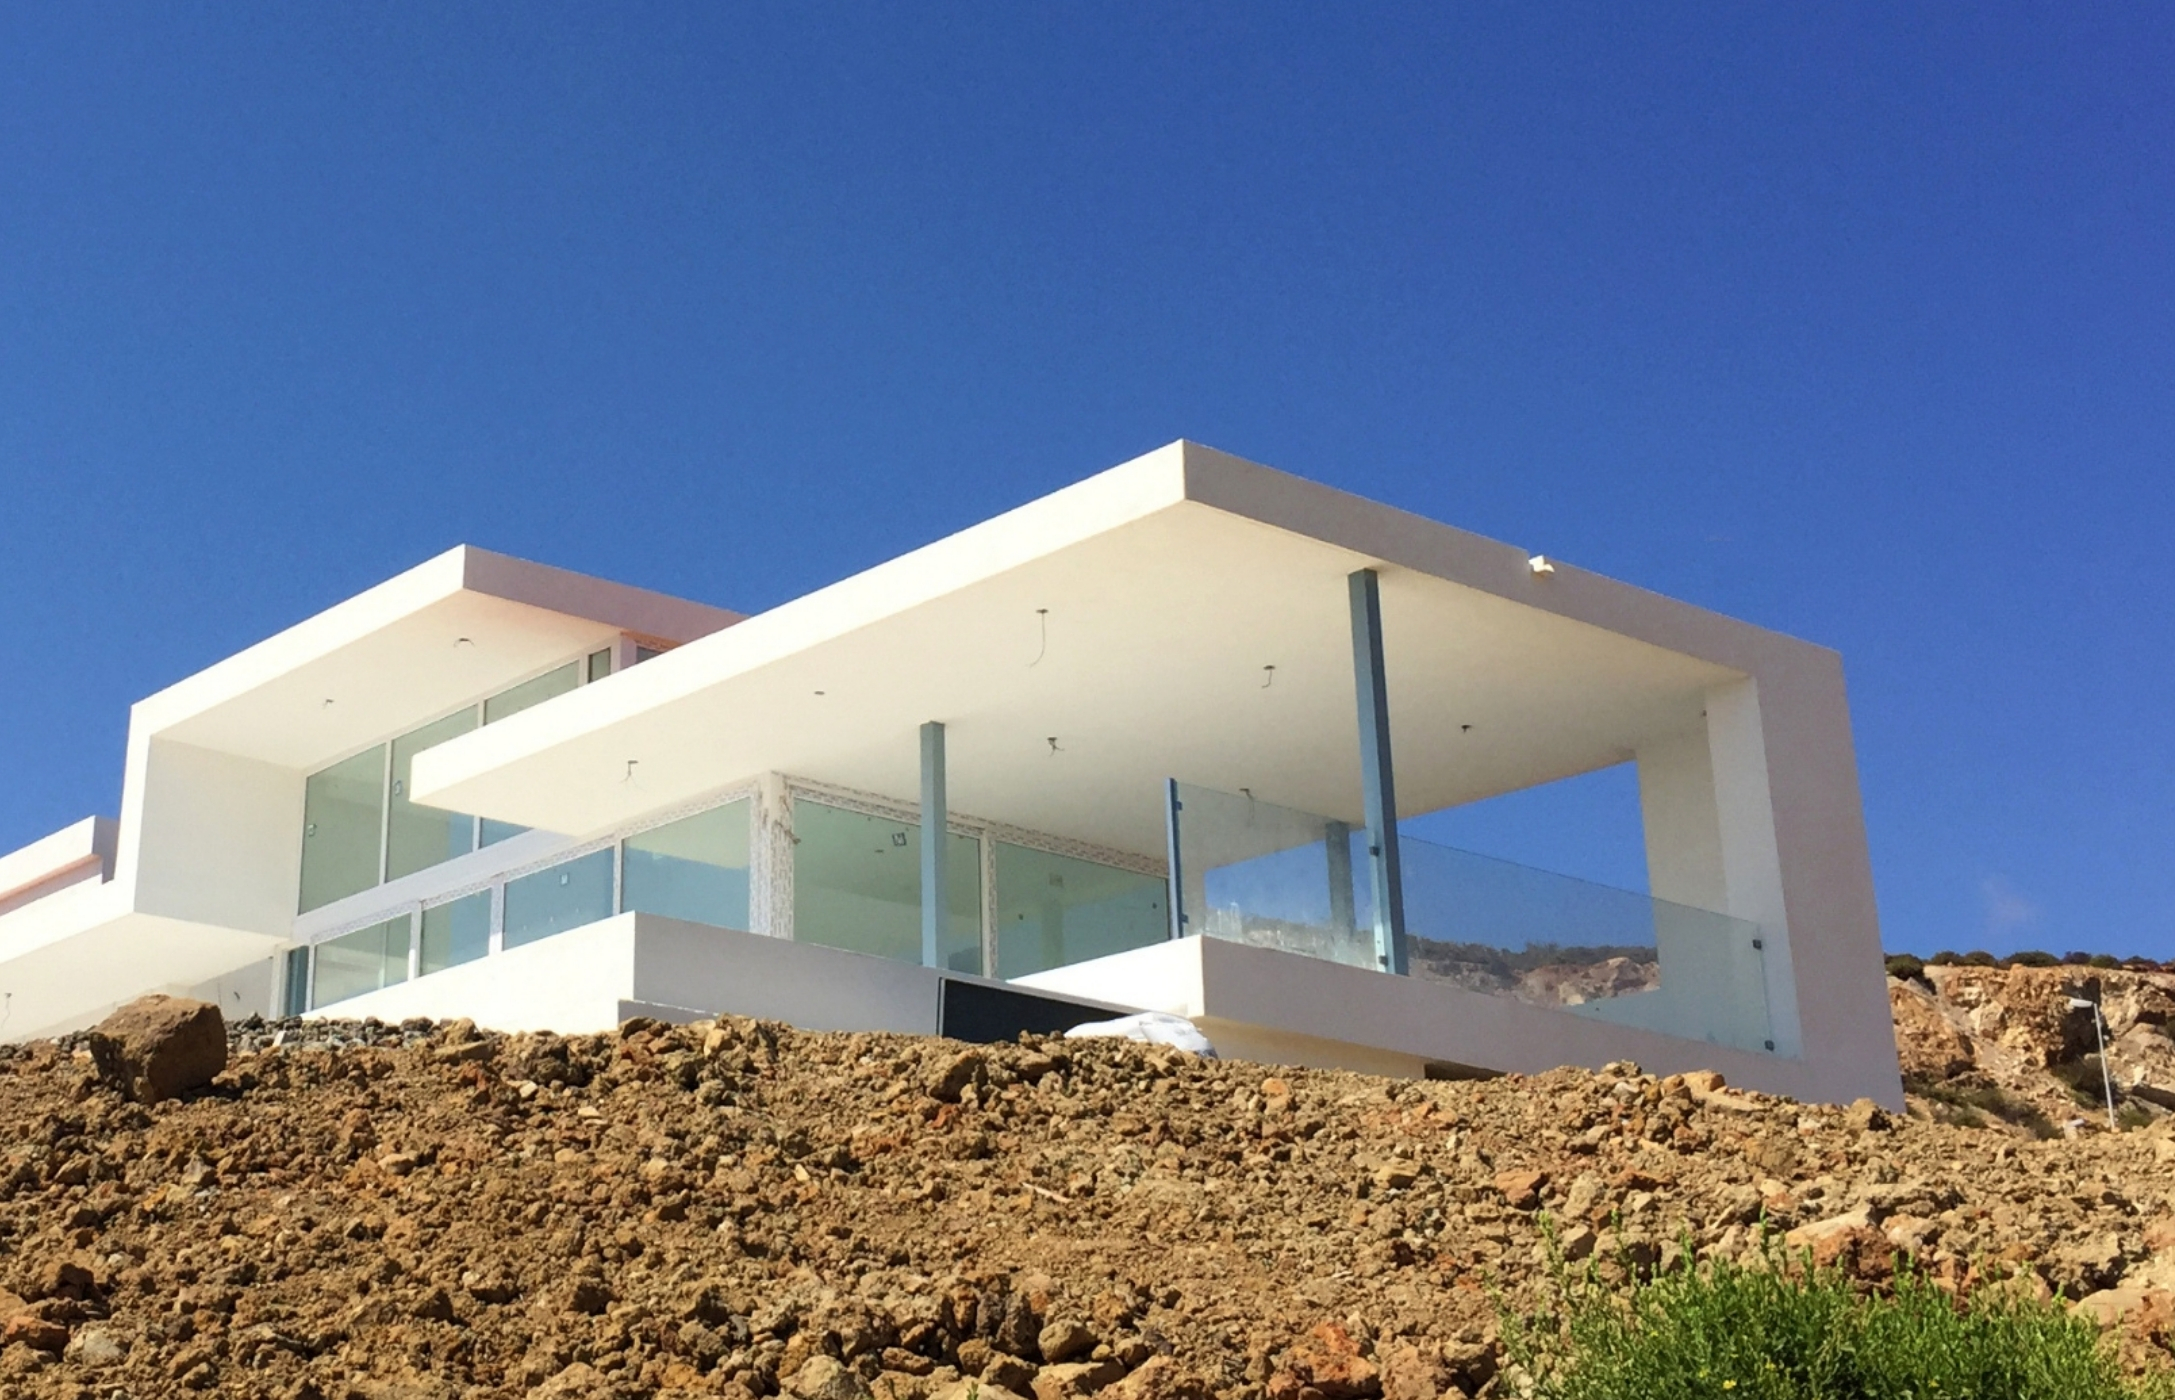 6 viviendas unifamiliares. Un proyecto del estudio de arquitectura FH2L Arquitectos en Casares, Málaga.